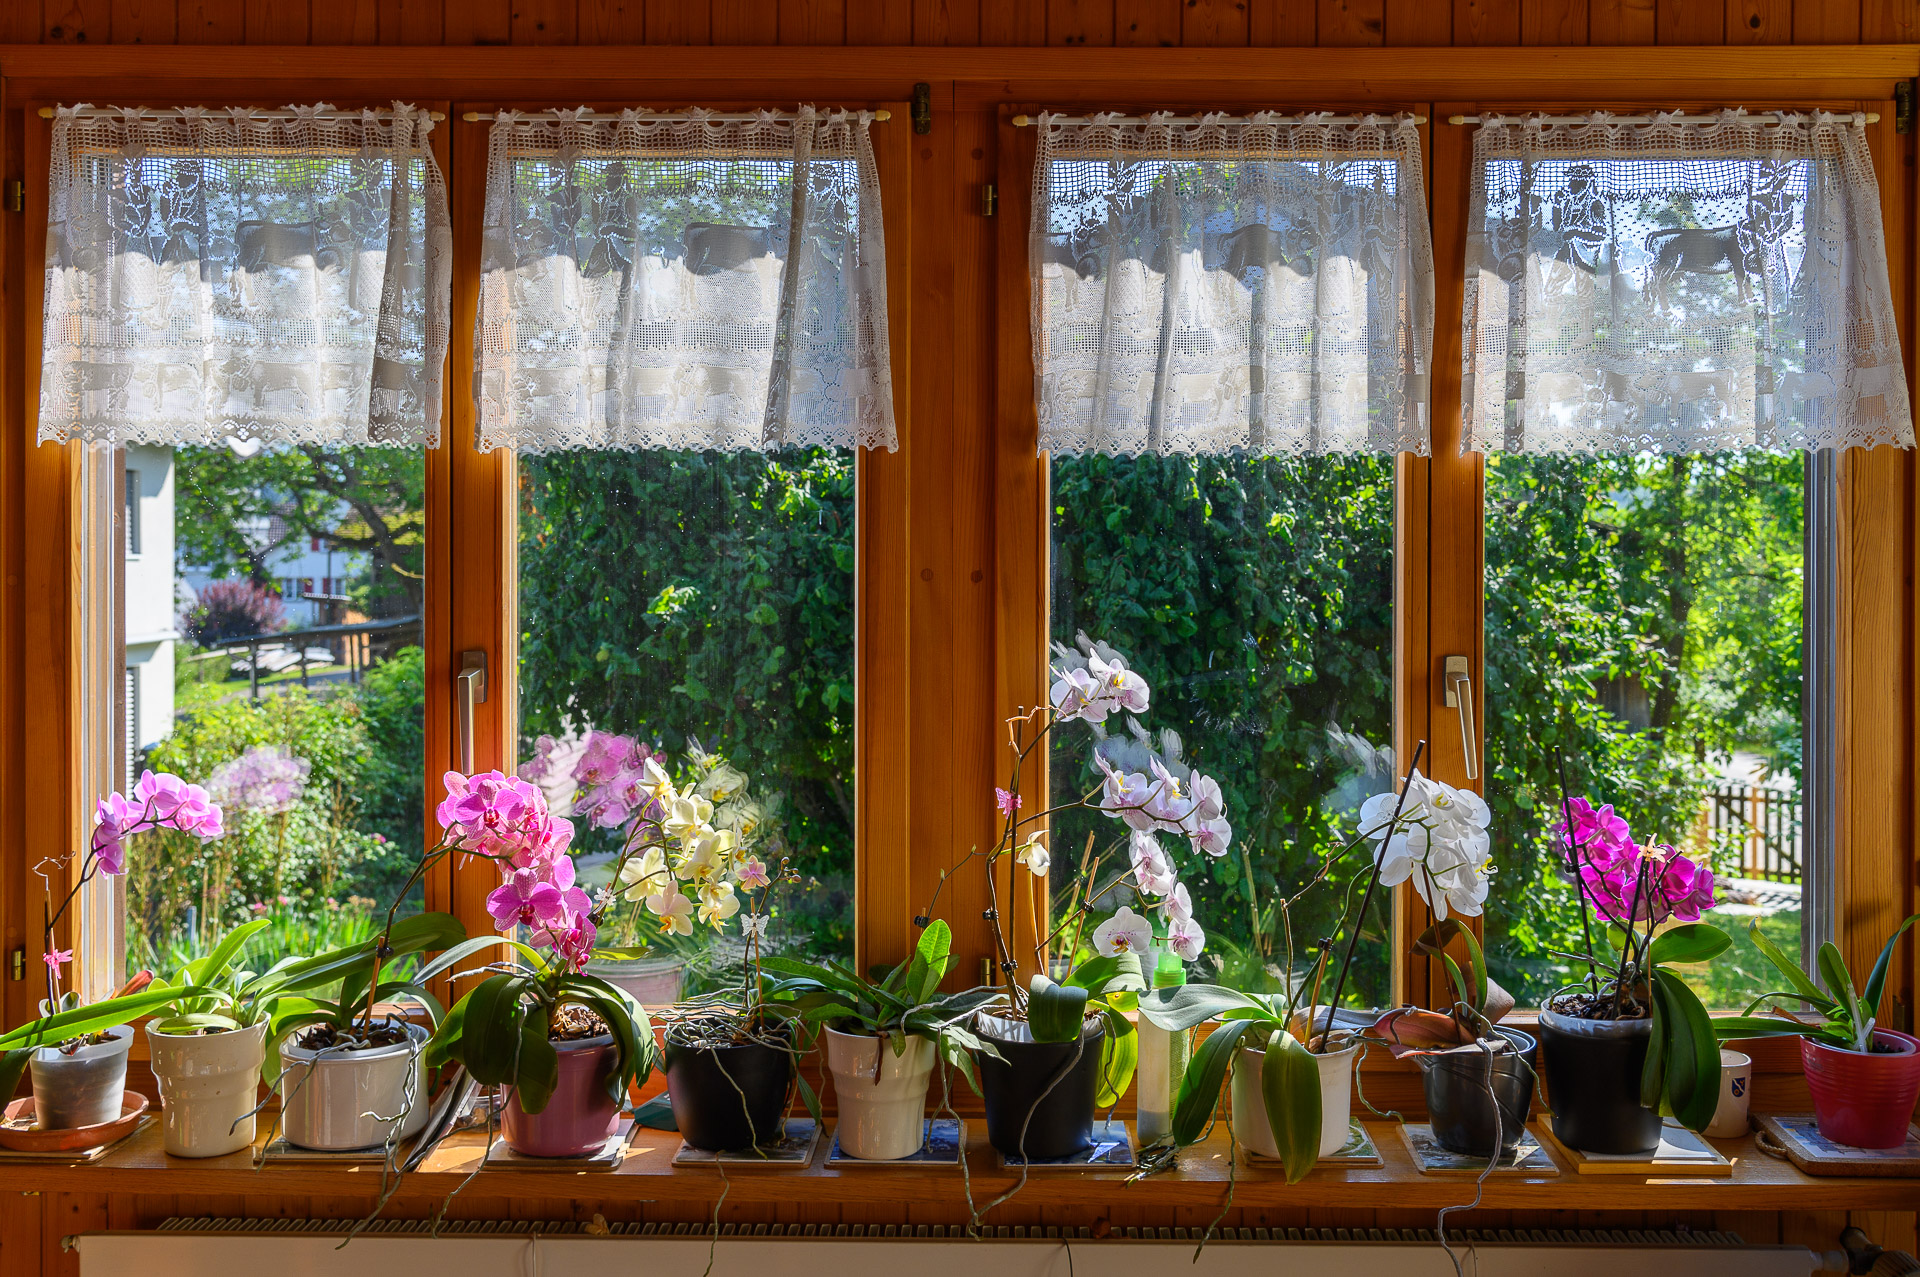 Orchideenfenster im Usser-Langenriet am 30 Juli 2021 um 9.40 Uhr